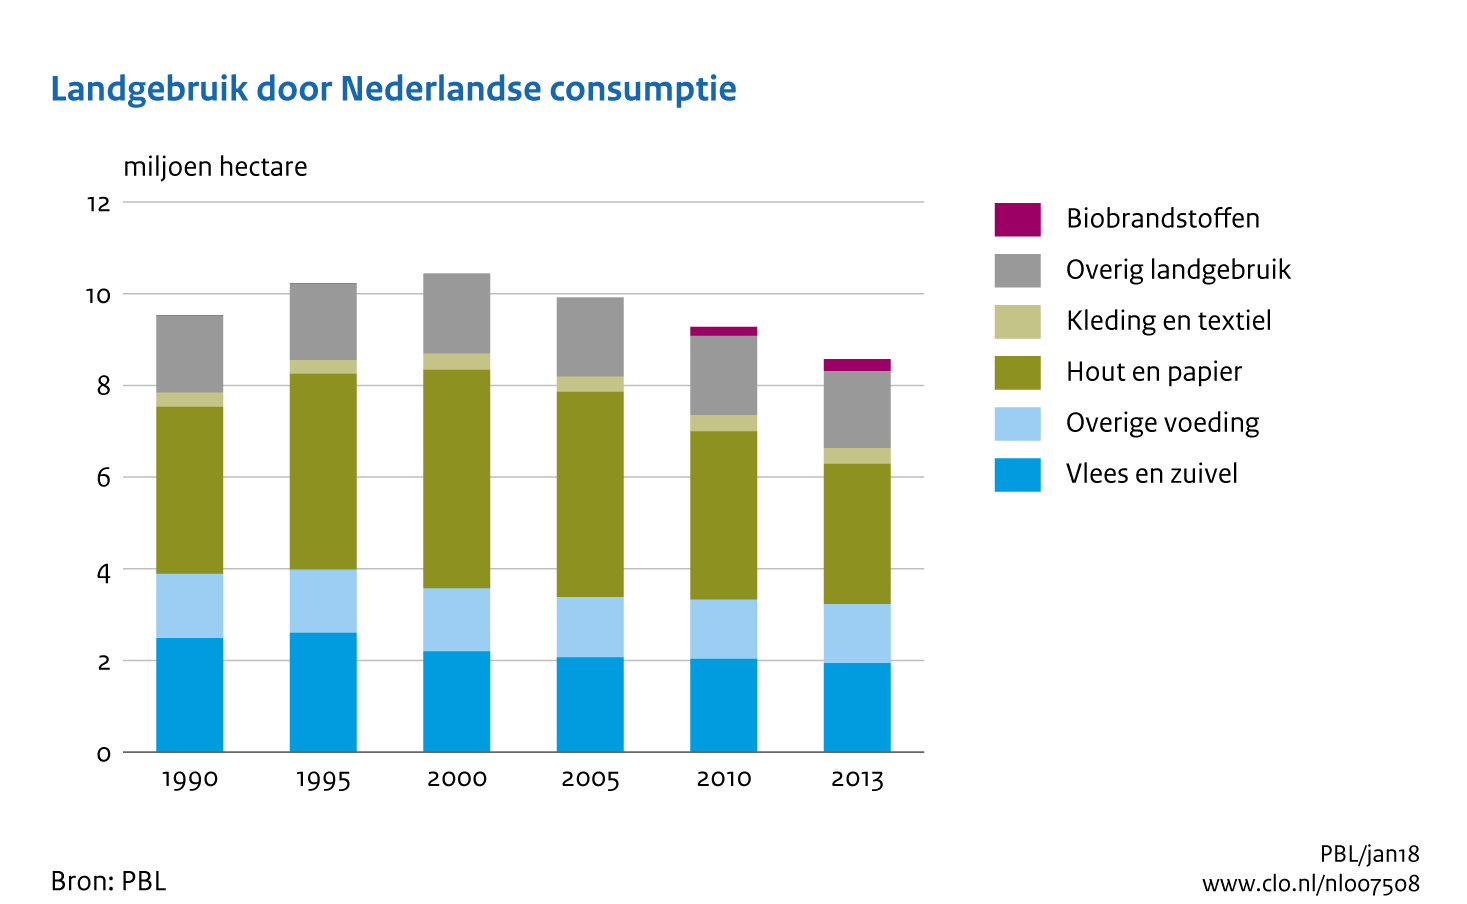 Figuur Landgebruik door Nederlandse consumptie. In de rest van de tekst wordt deze figuur uitgebreider uitgelegd.